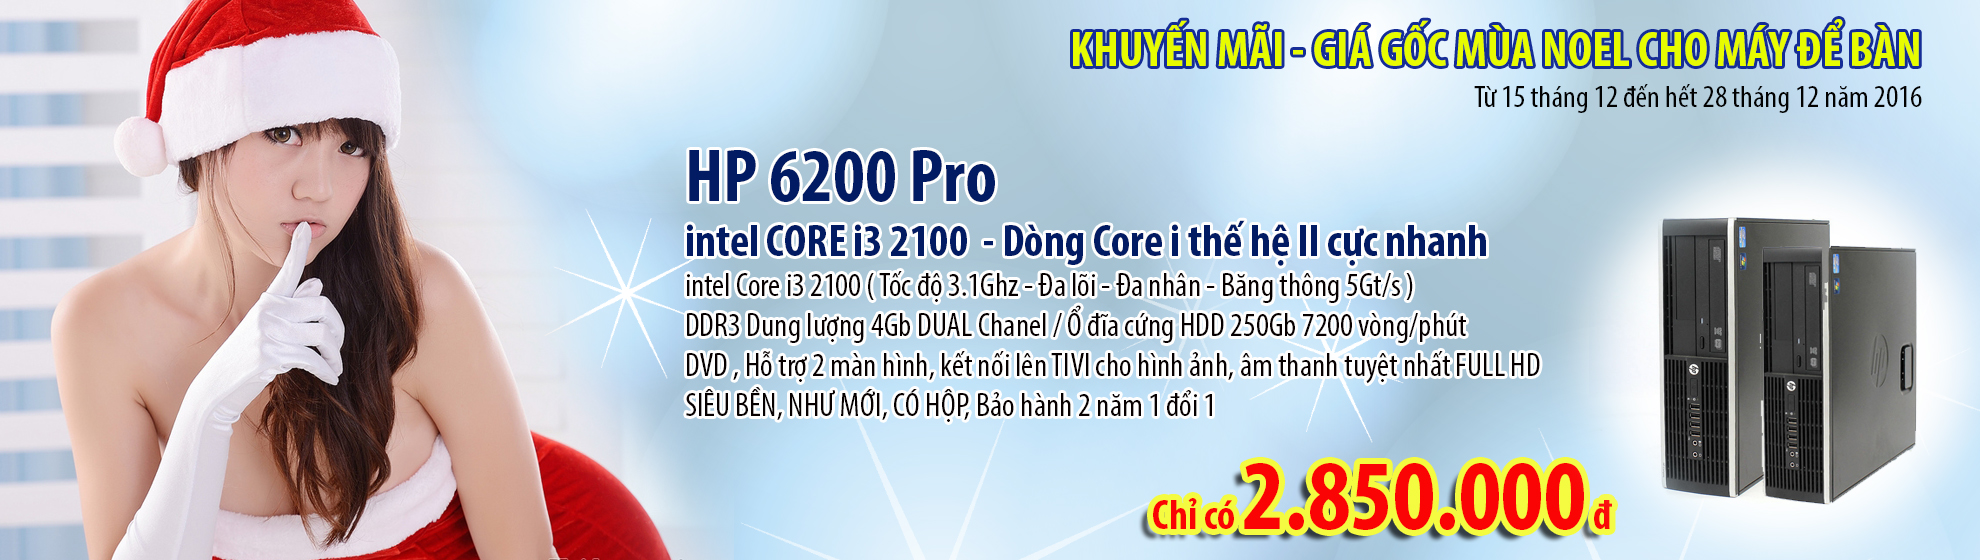 Khuyến mãi giá gốc máy tính đồng bộ HP 6200 tại Hà nội